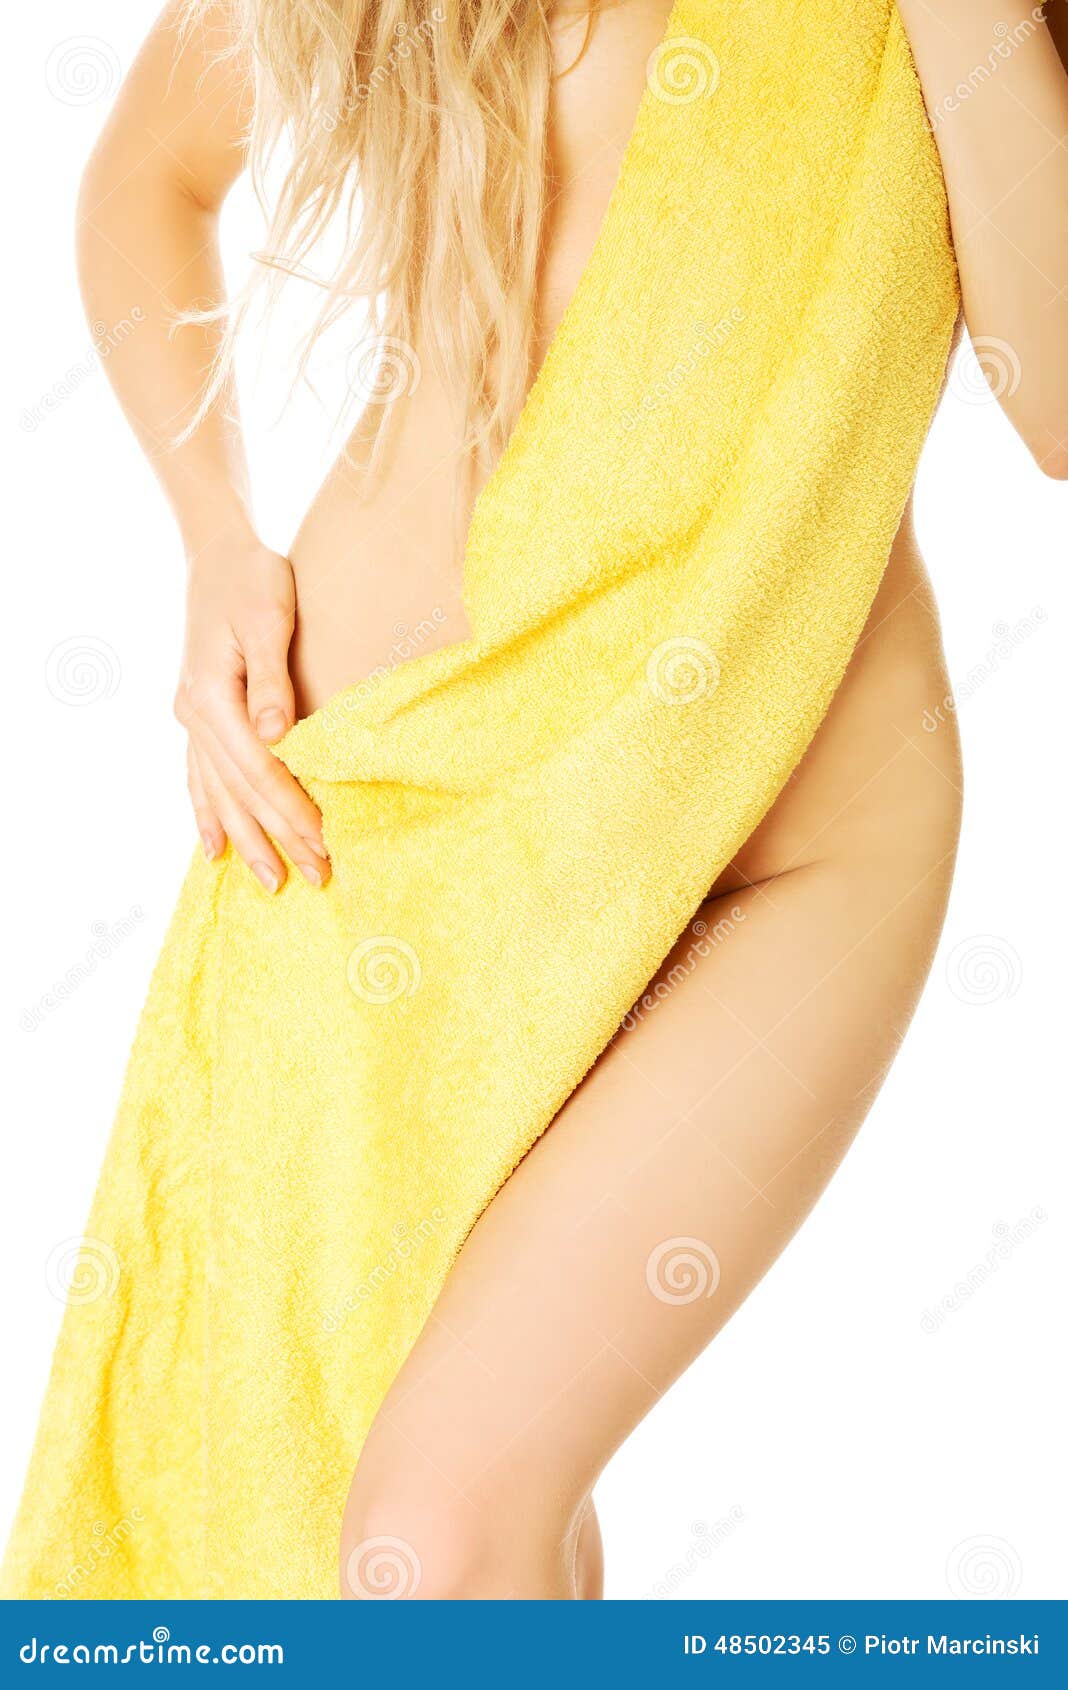 Ходит в полотенце. Девушка завернутая в полотенце. Женщина в одном полотенце. Женское тело в полотенце. Девушка замотанная в полотенце.